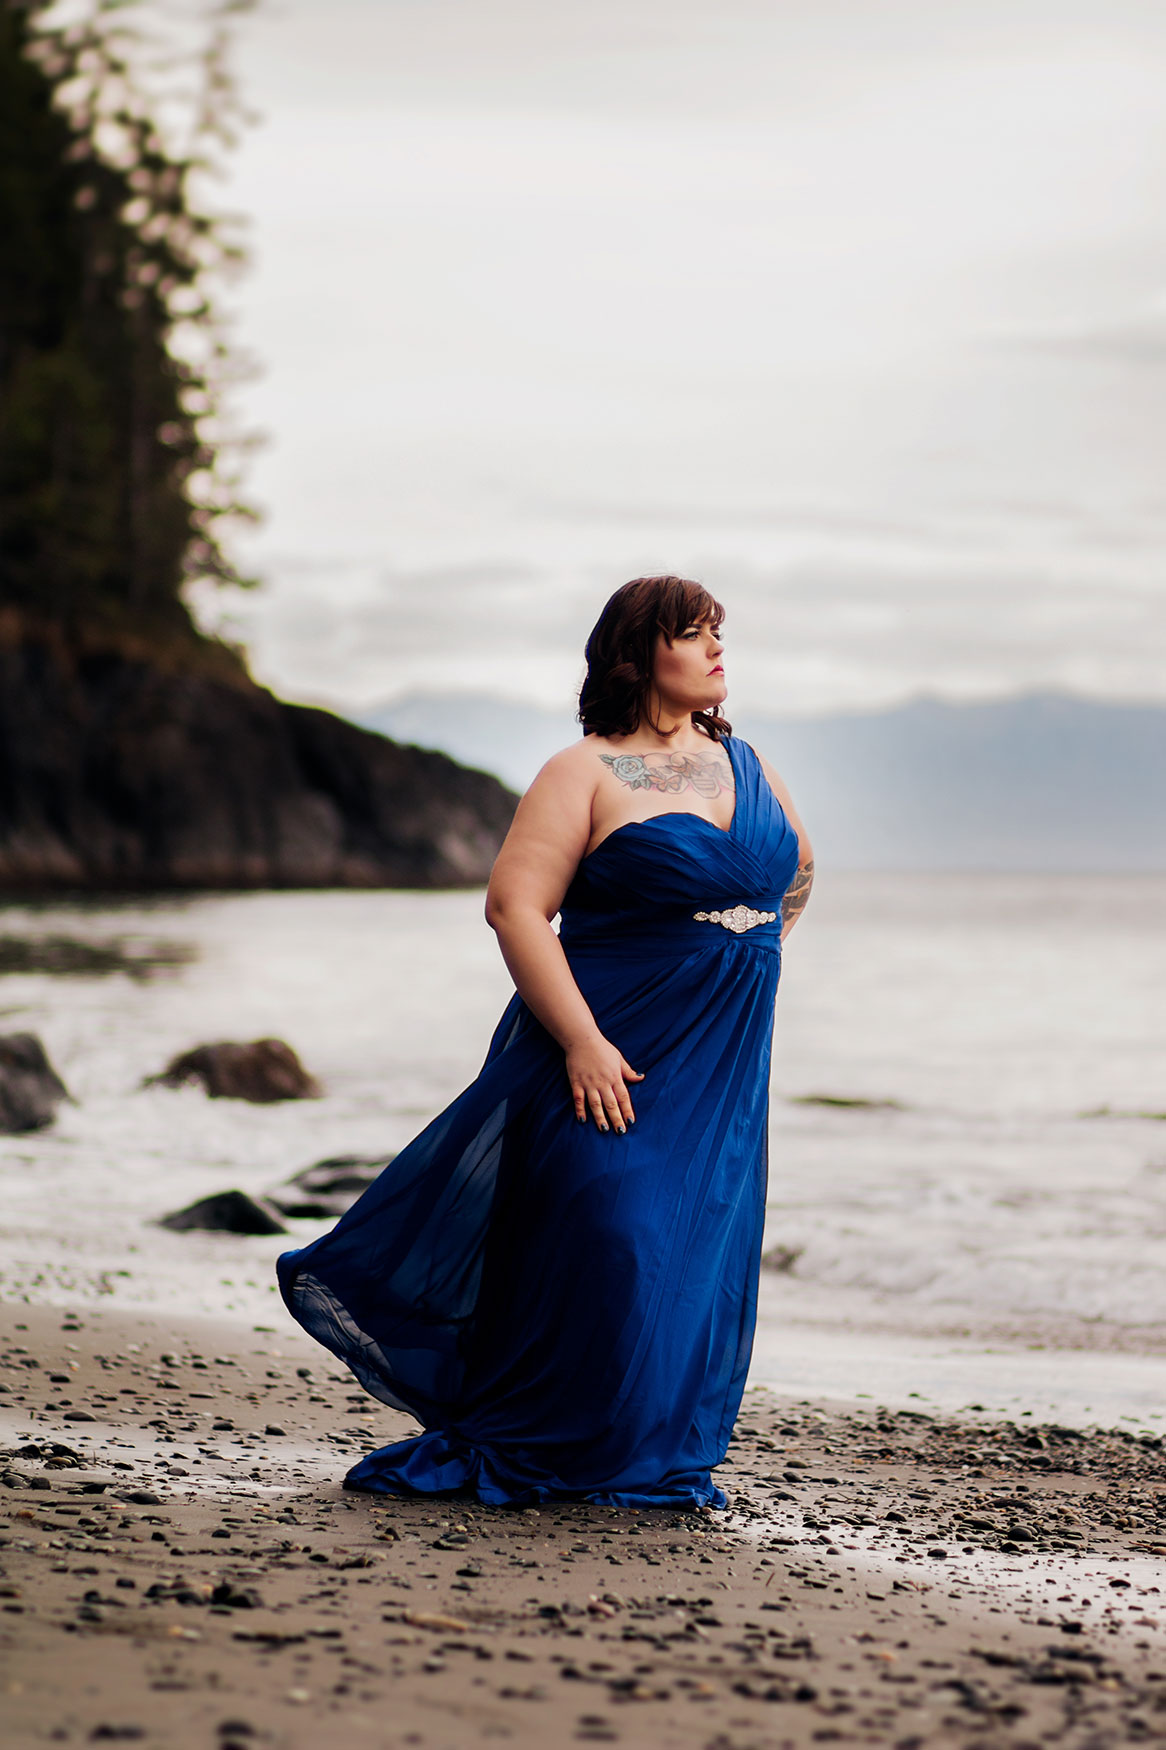 Vancouver-Island-Sea-Goddess-Moss-Photography-2.jpg